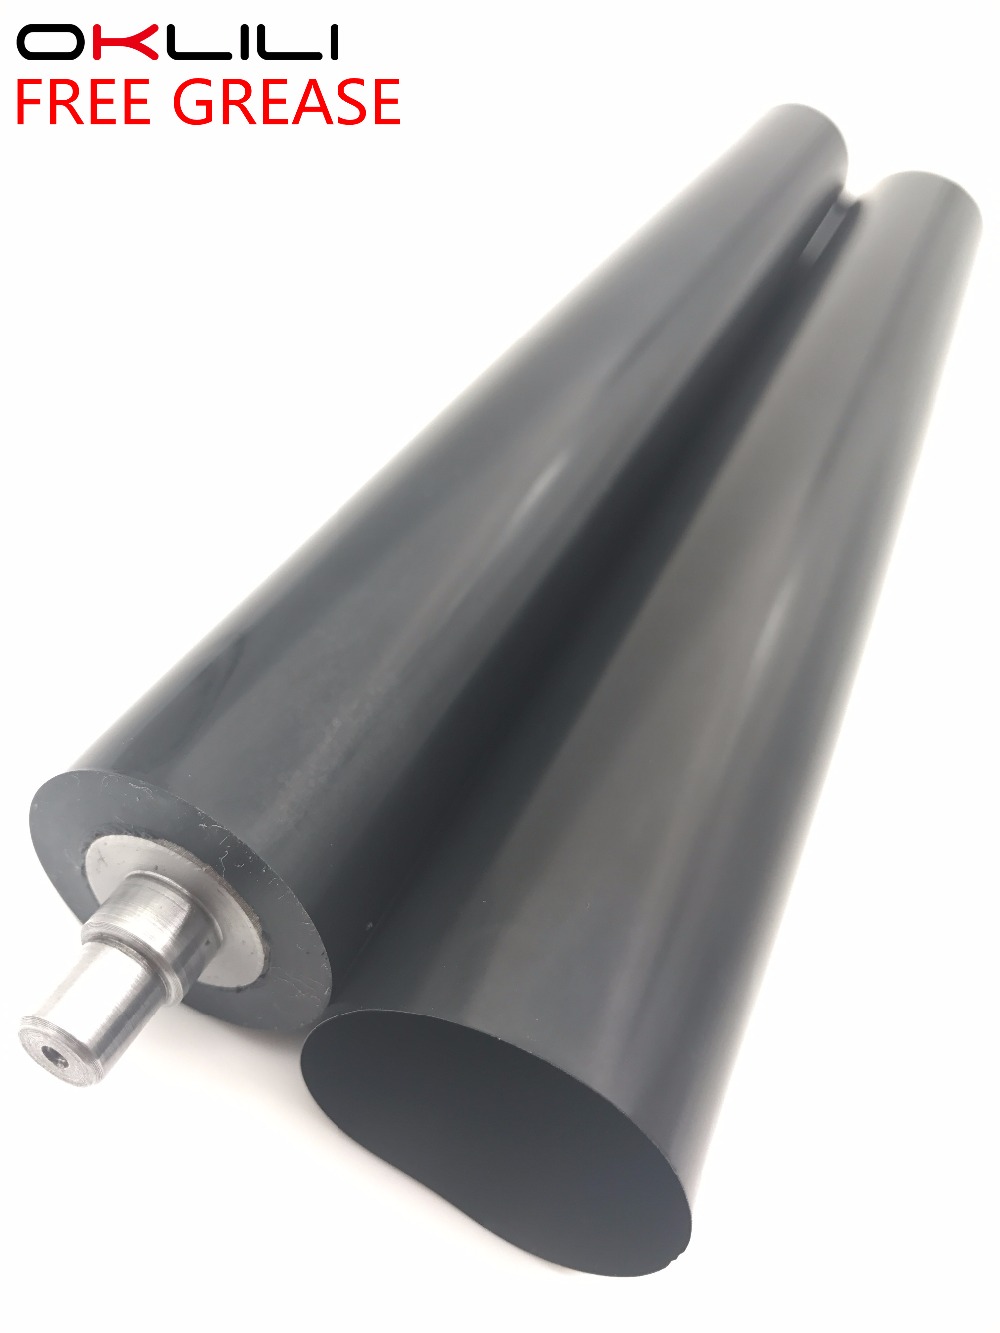 1SETX Fuser Film Sleeve Pressure Roller for Brother MFC L5700 L5750 L5755 L5800 L5850 L5900 L6700 L6750 L6800 L6900 8530 8535